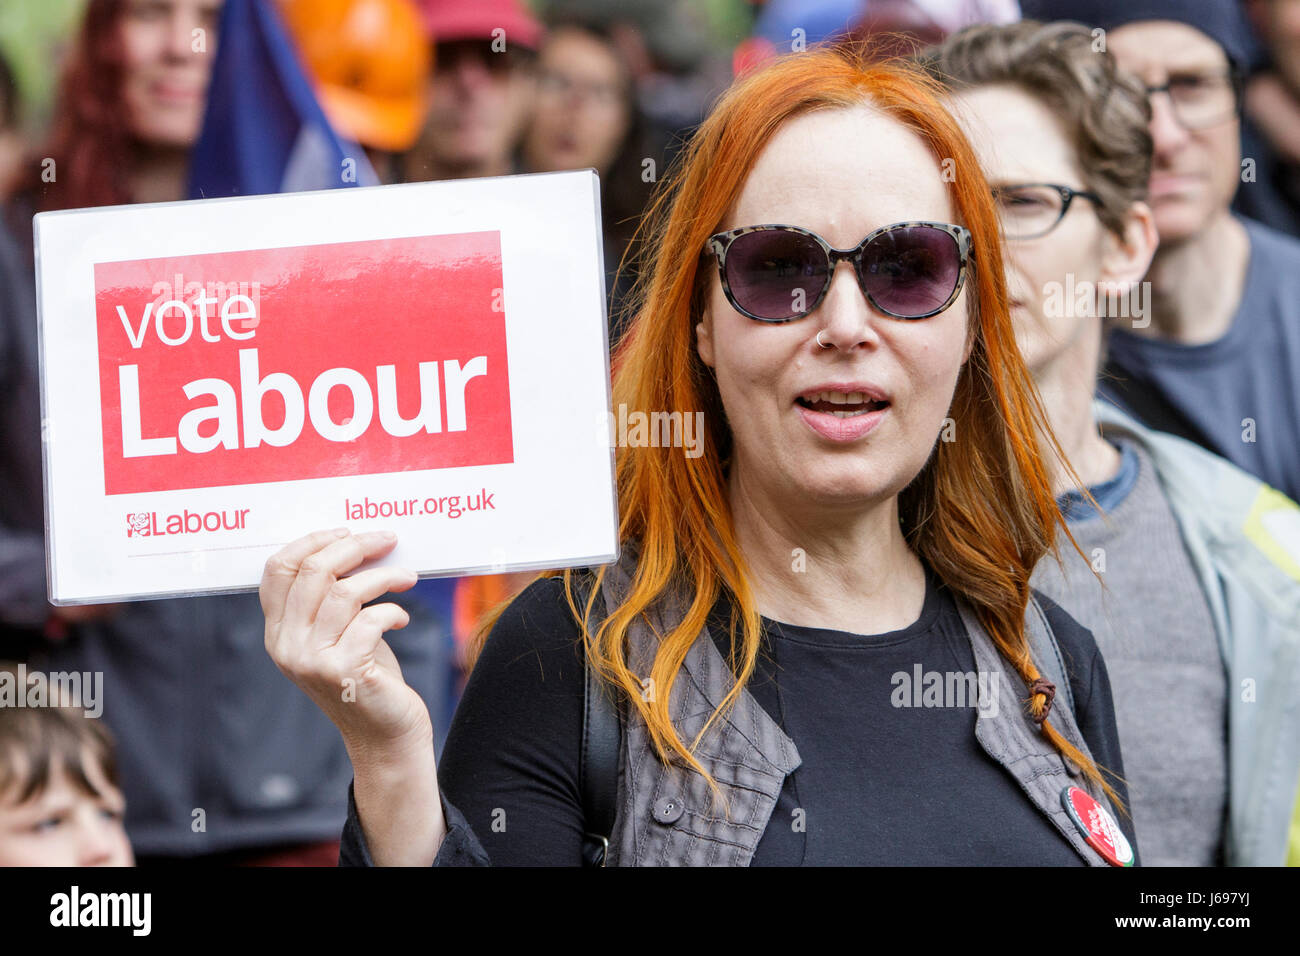 Bristol, Reino Unido. 20 de mayo de 2017. Es representada como una mujer participa en una marcha de protesta en la ciudad de Bristol, la marcha se celebró para defender la educación y detener el recorte de la financiación a las escuelas. Crédito: lynchpics/Alamy Live News Foto de stock